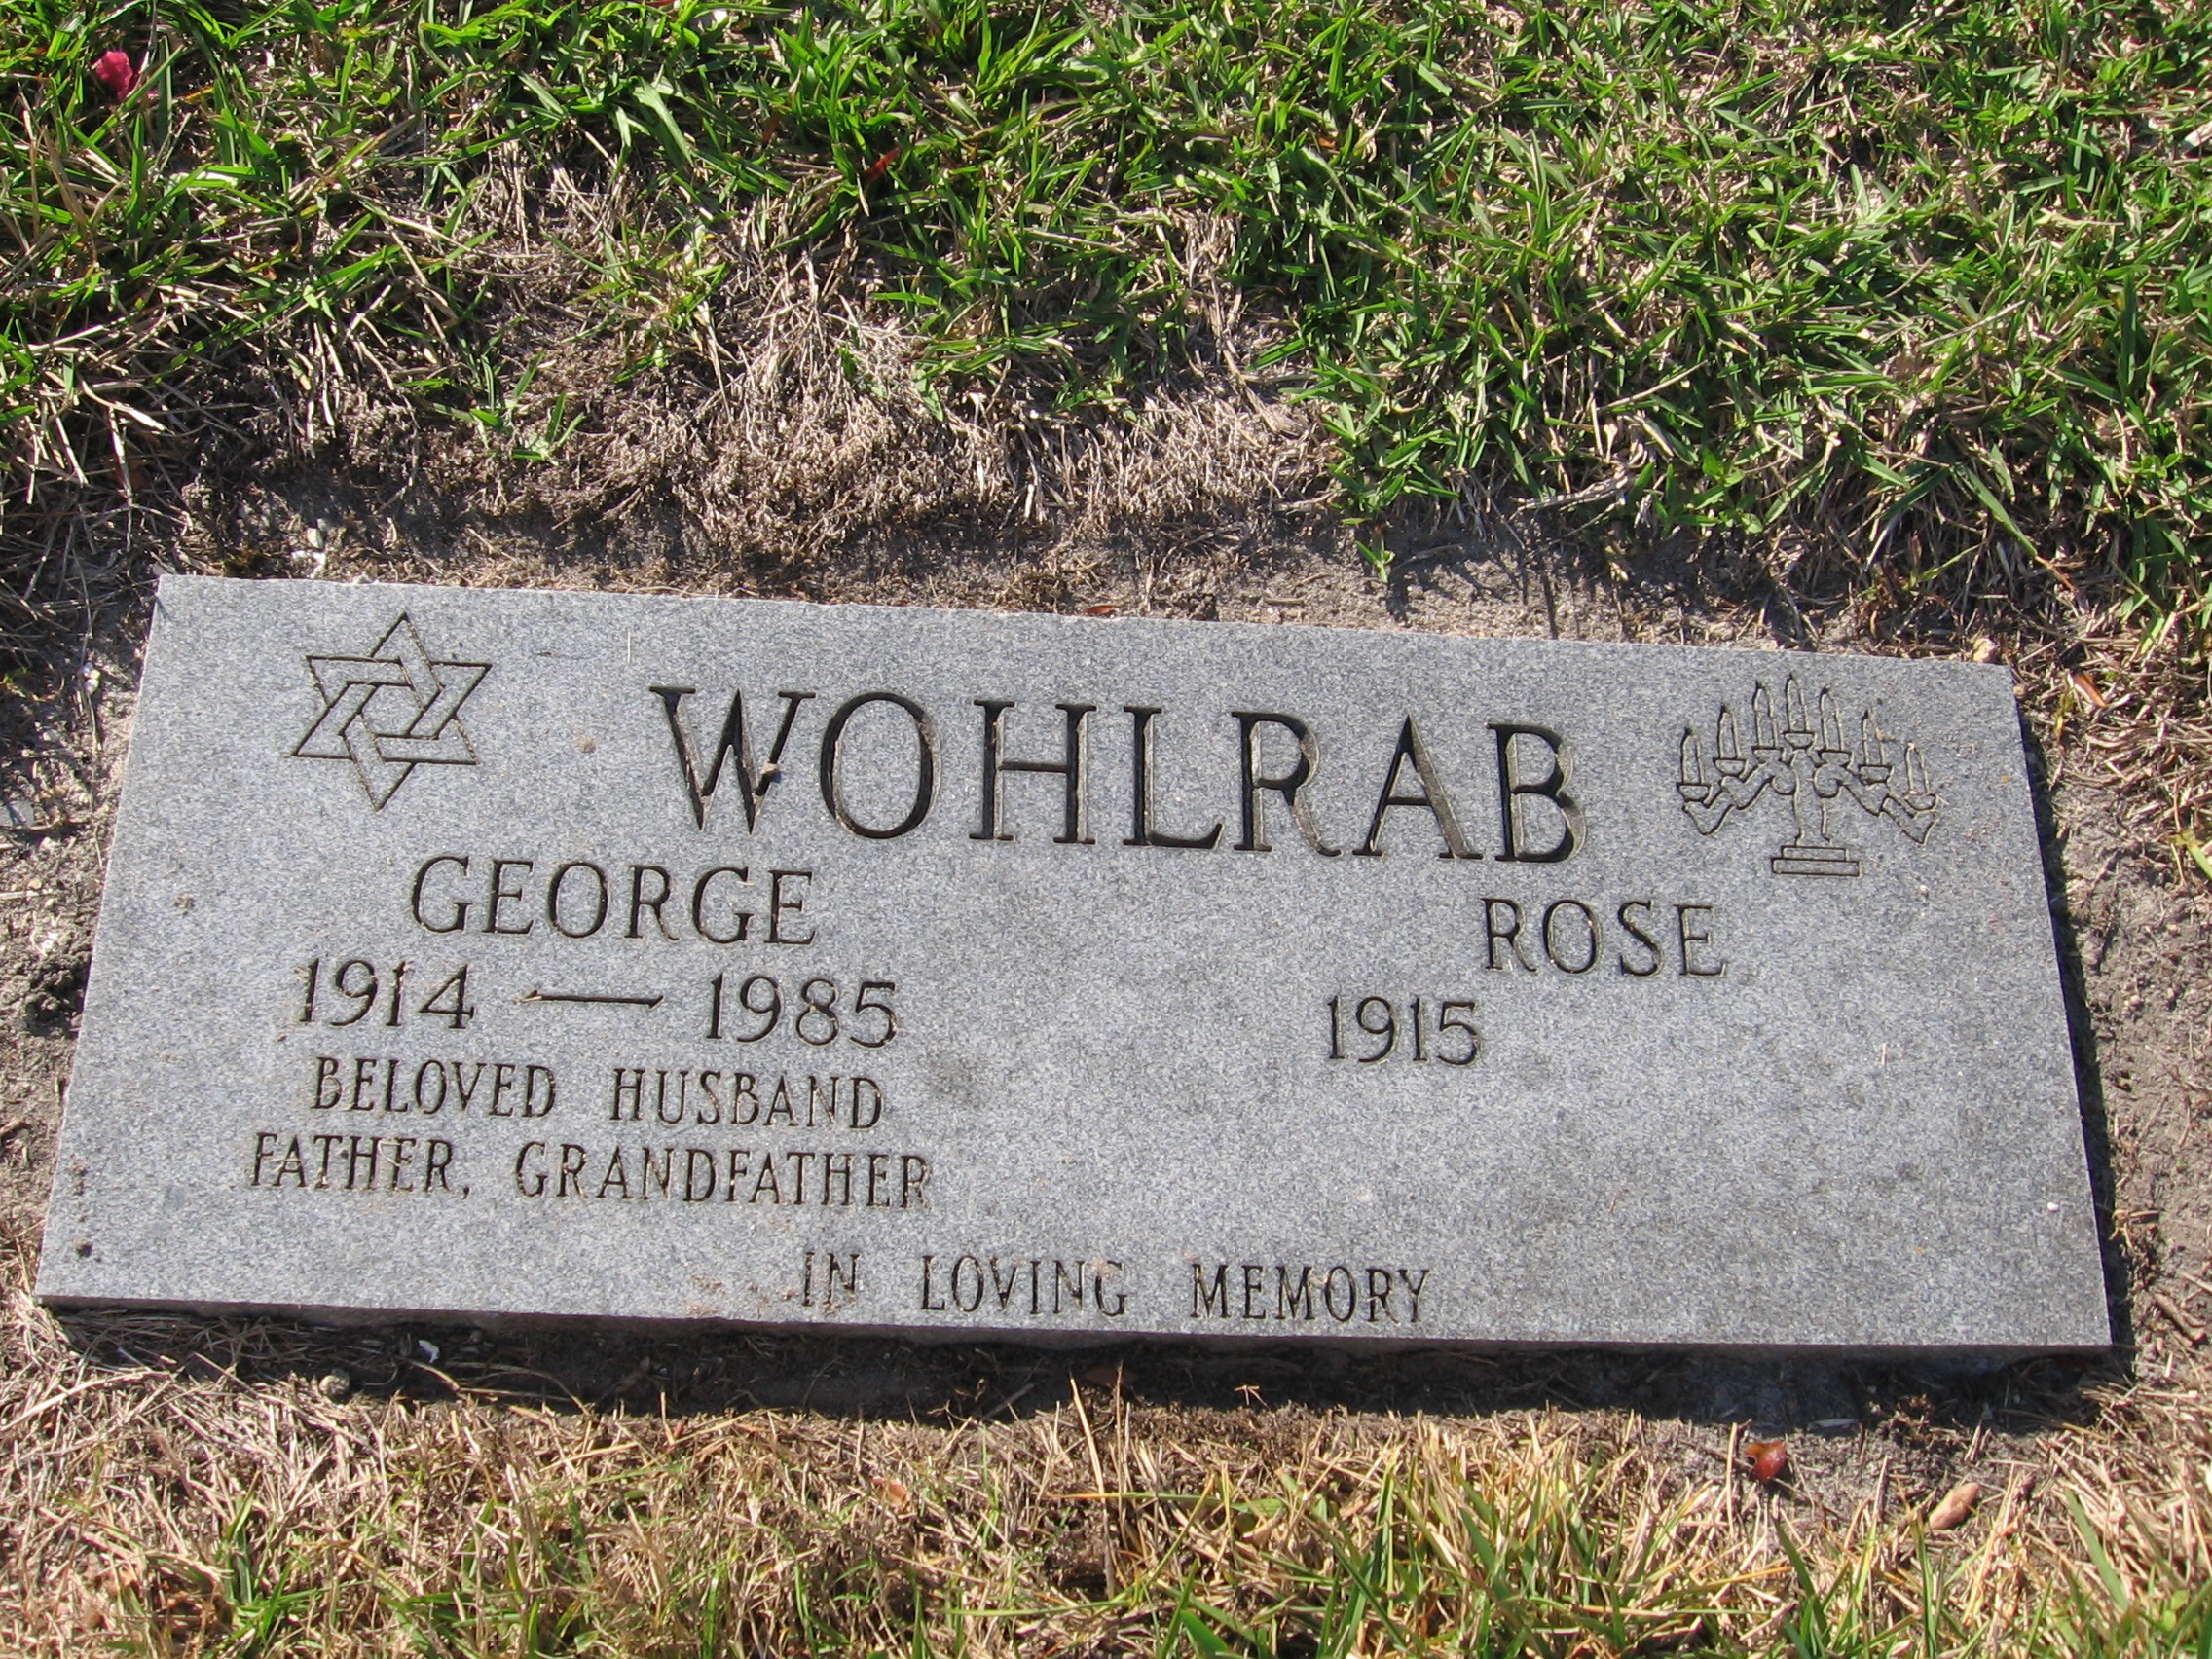 George Wohlrab